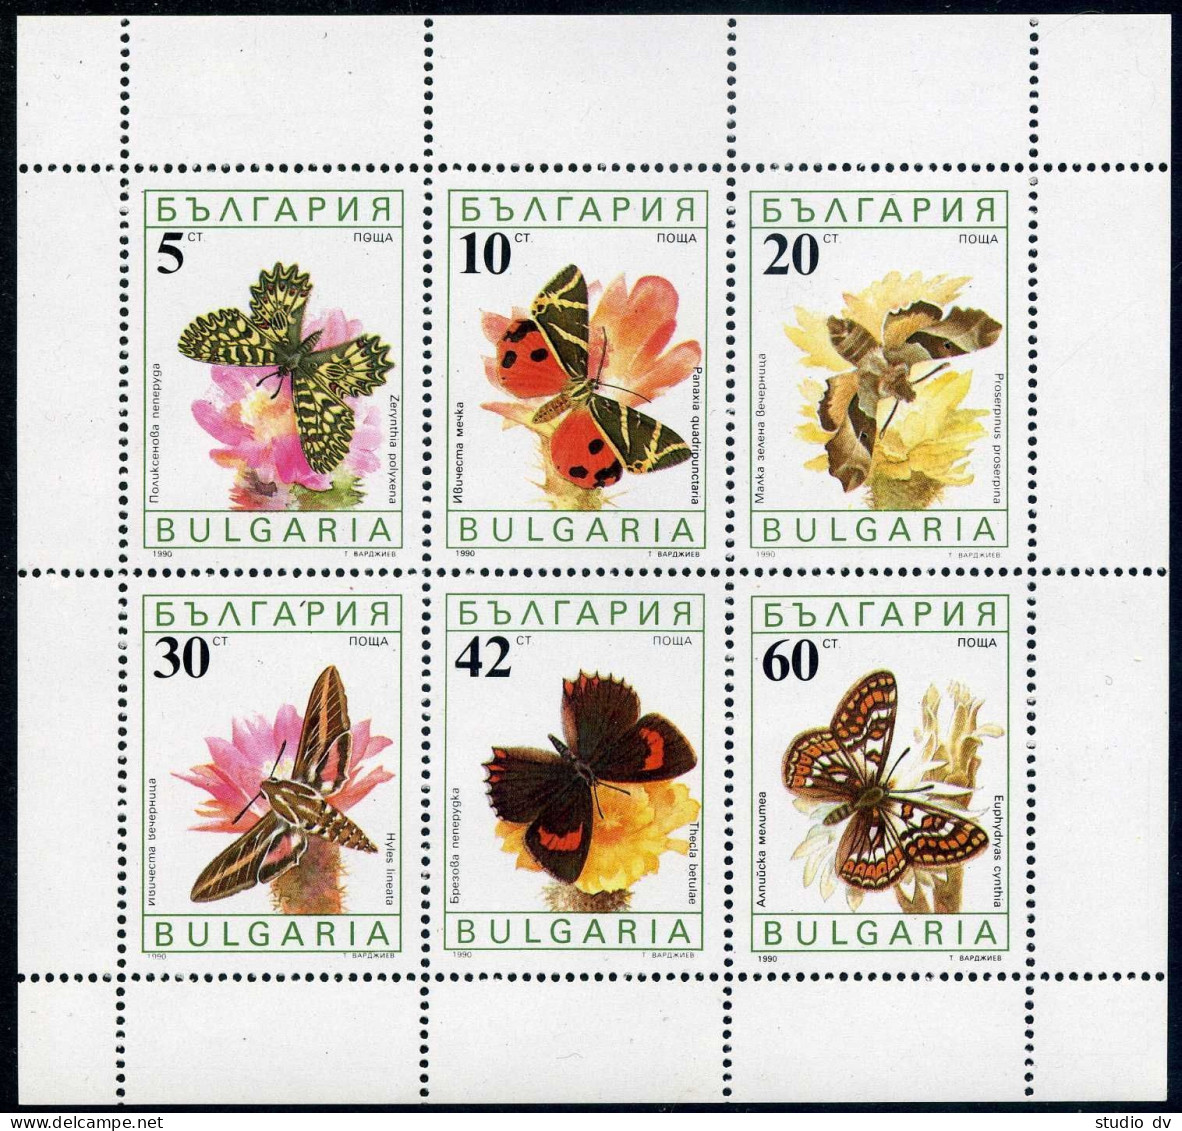 Bulgaria 3556a Sheet,MNH.Michel 3852-3857 Klb. Butterflies And Flowers 1990. - Ungebraucht